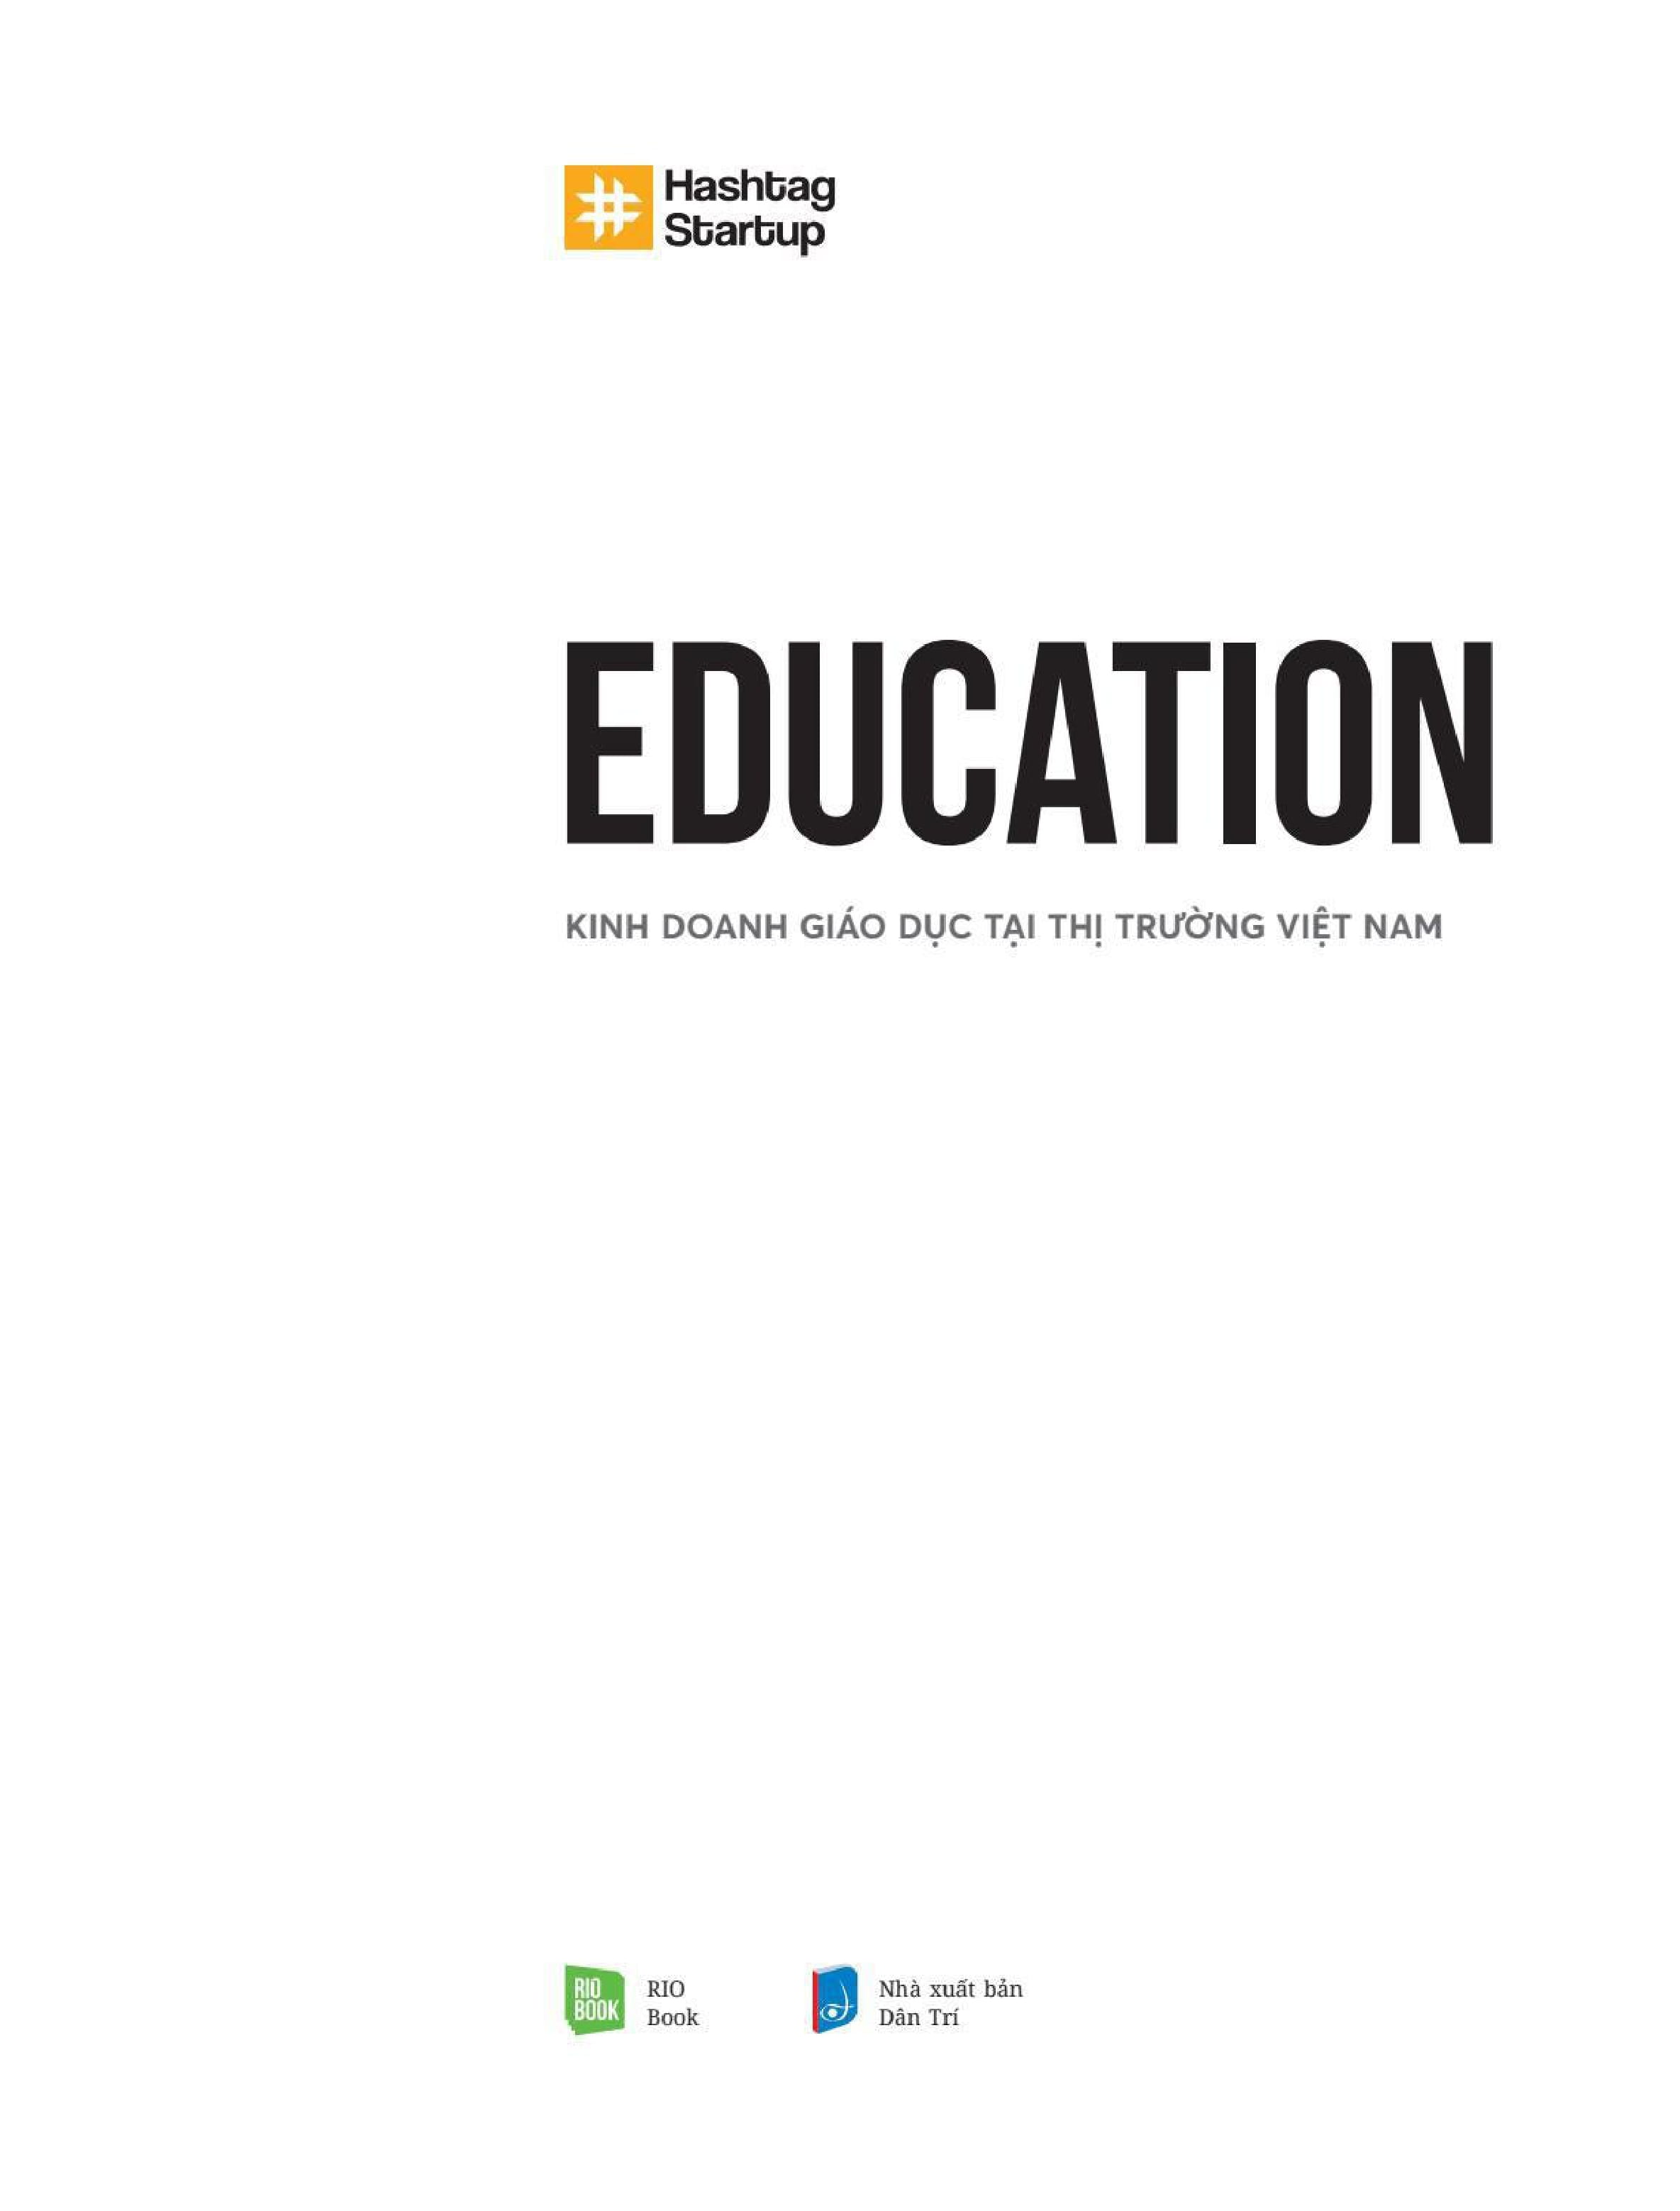 Hashtag #5: Education - Kinh Doanh Giáo Dục Tại Thị Trường Việt Nam PDF